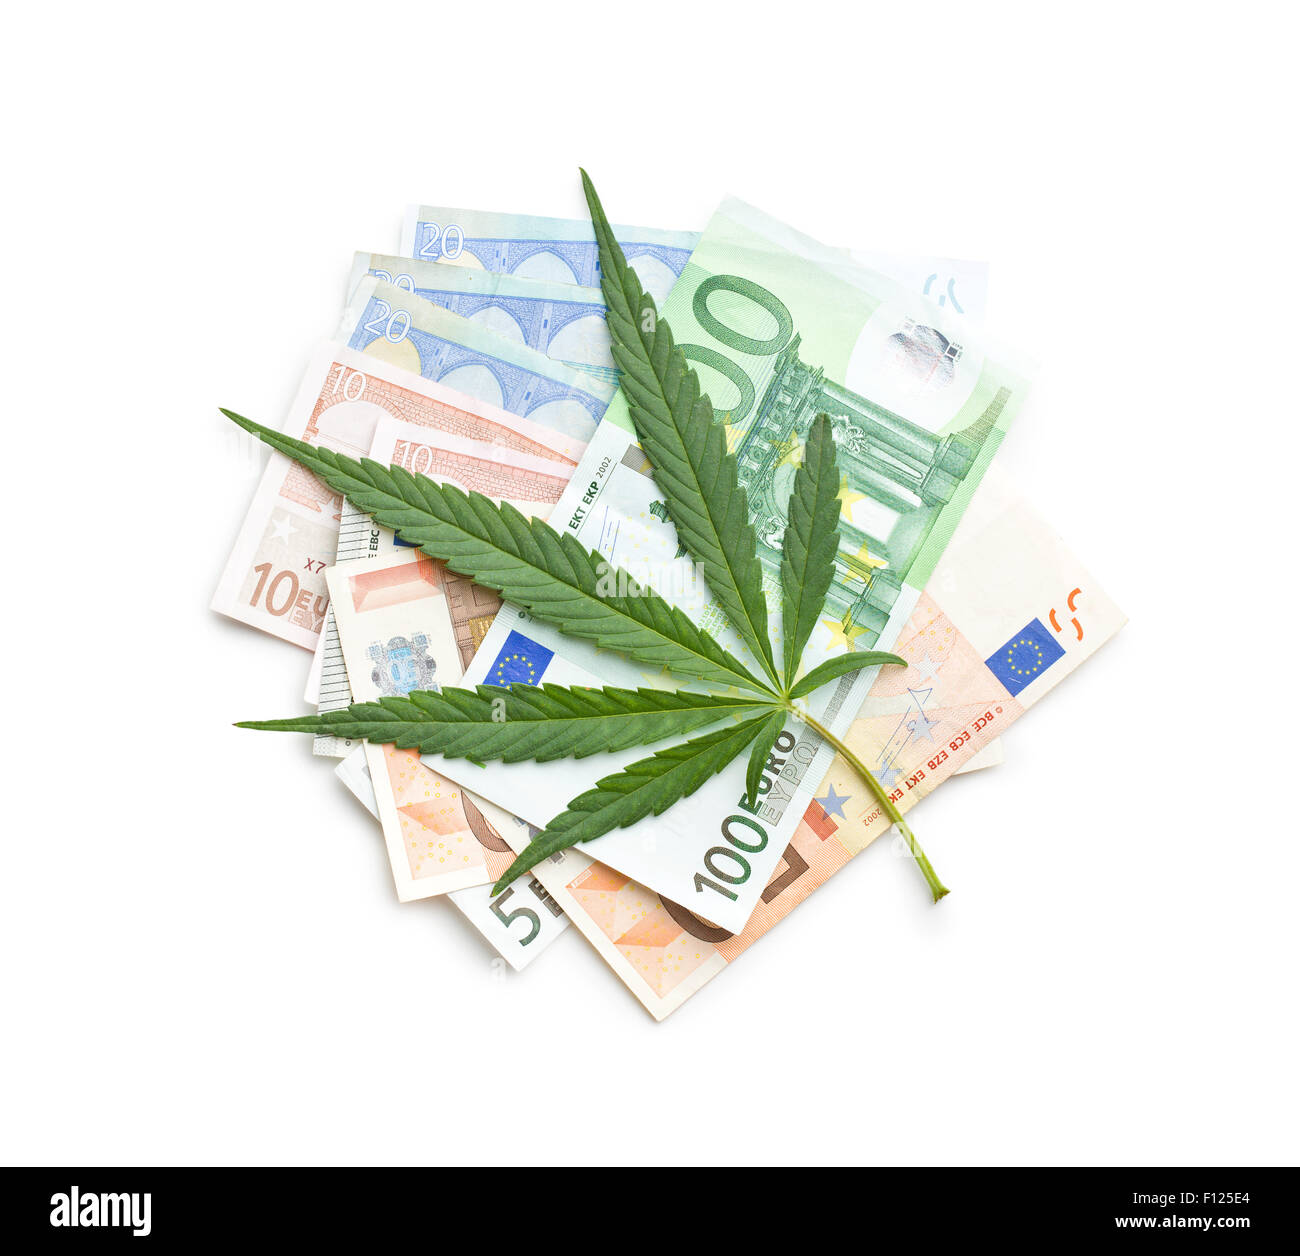 La feuille de cannabis et de l'argent Banque D'Images